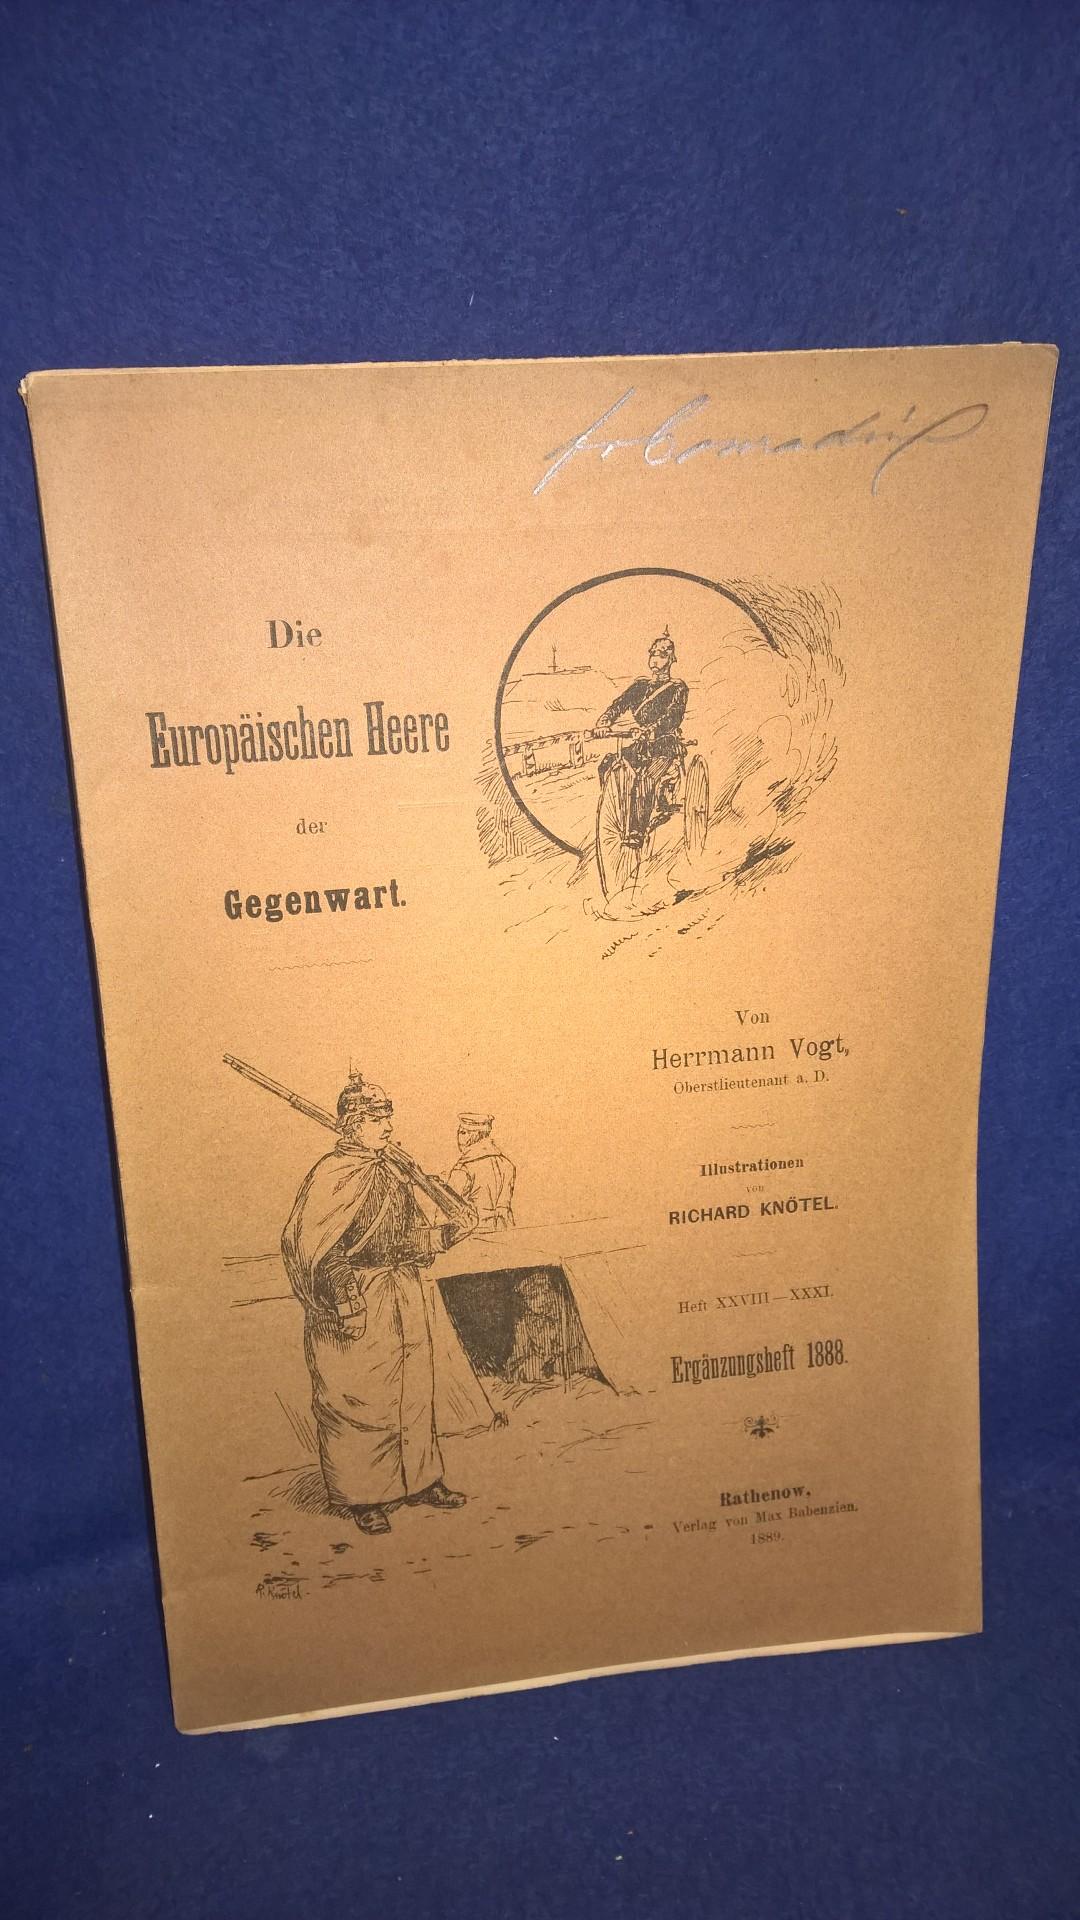 Die Europäischen Heere der Gegenwart. Heft XXVIII-XXXI. Ergänzungsheft 1888.